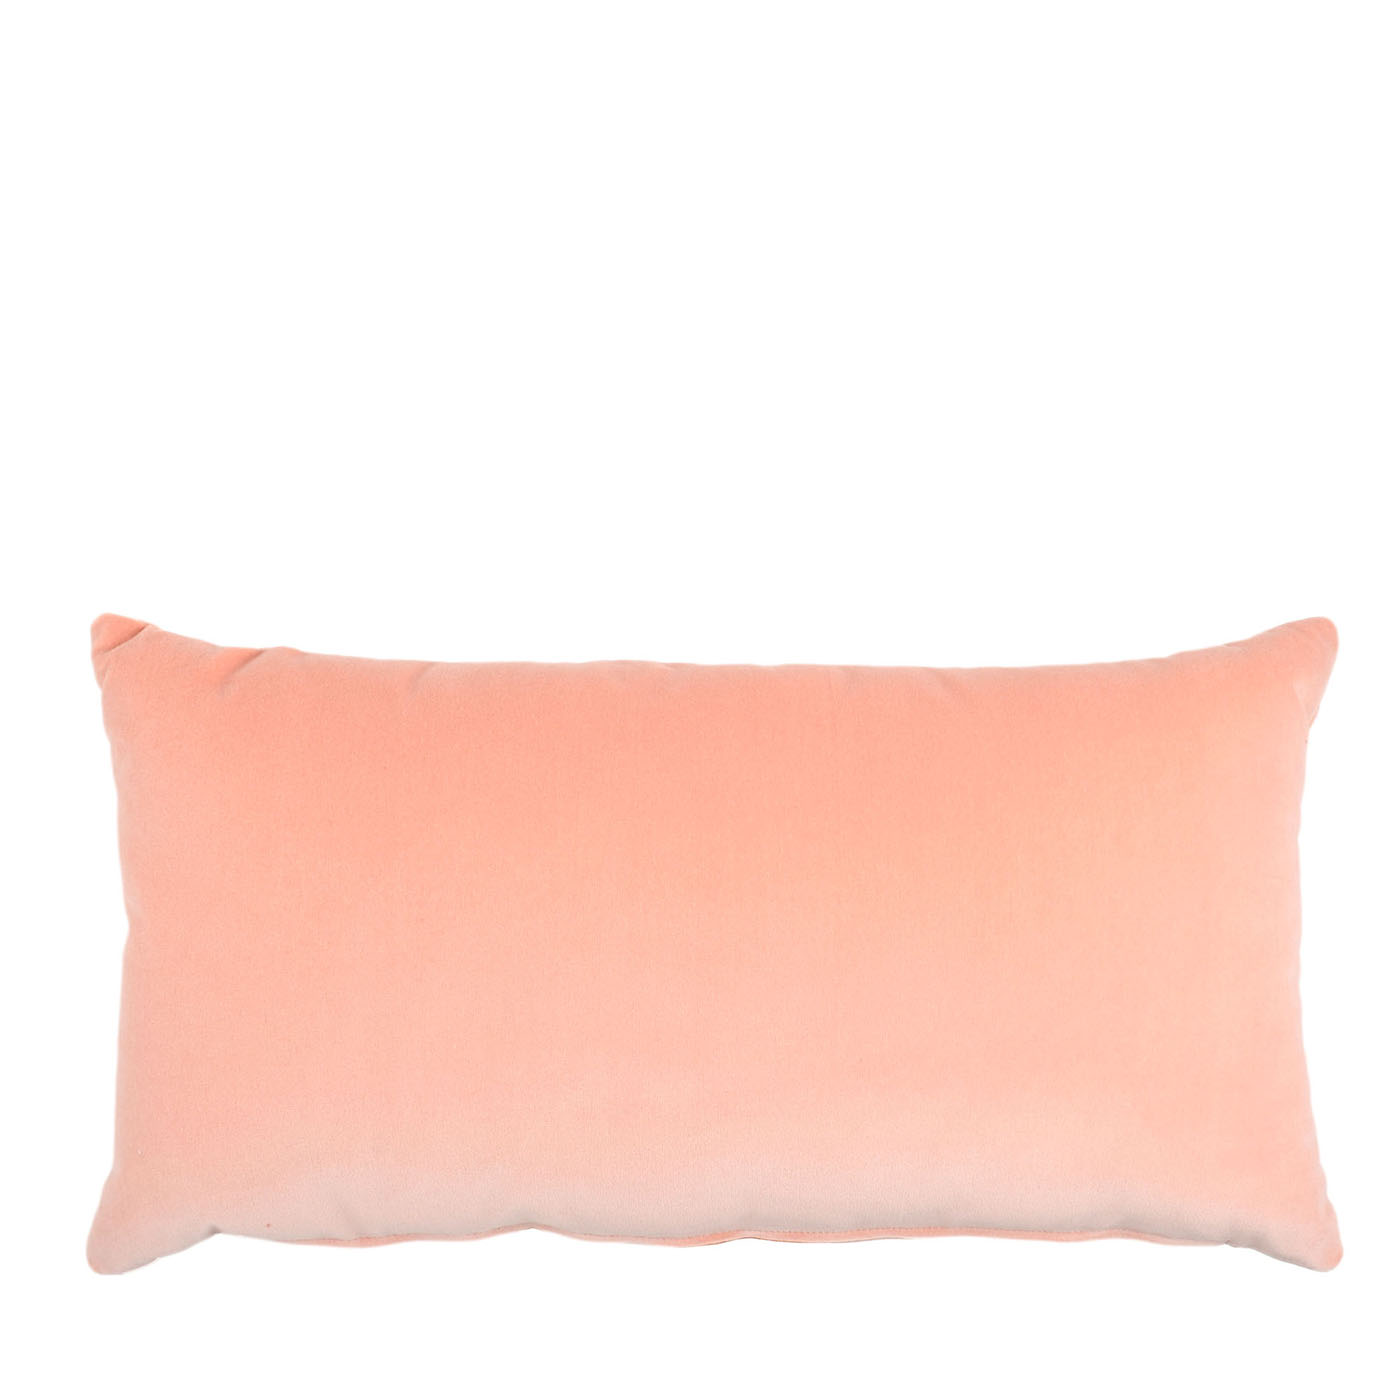 Peach Cotton Velvet Longue Cushion - Main view